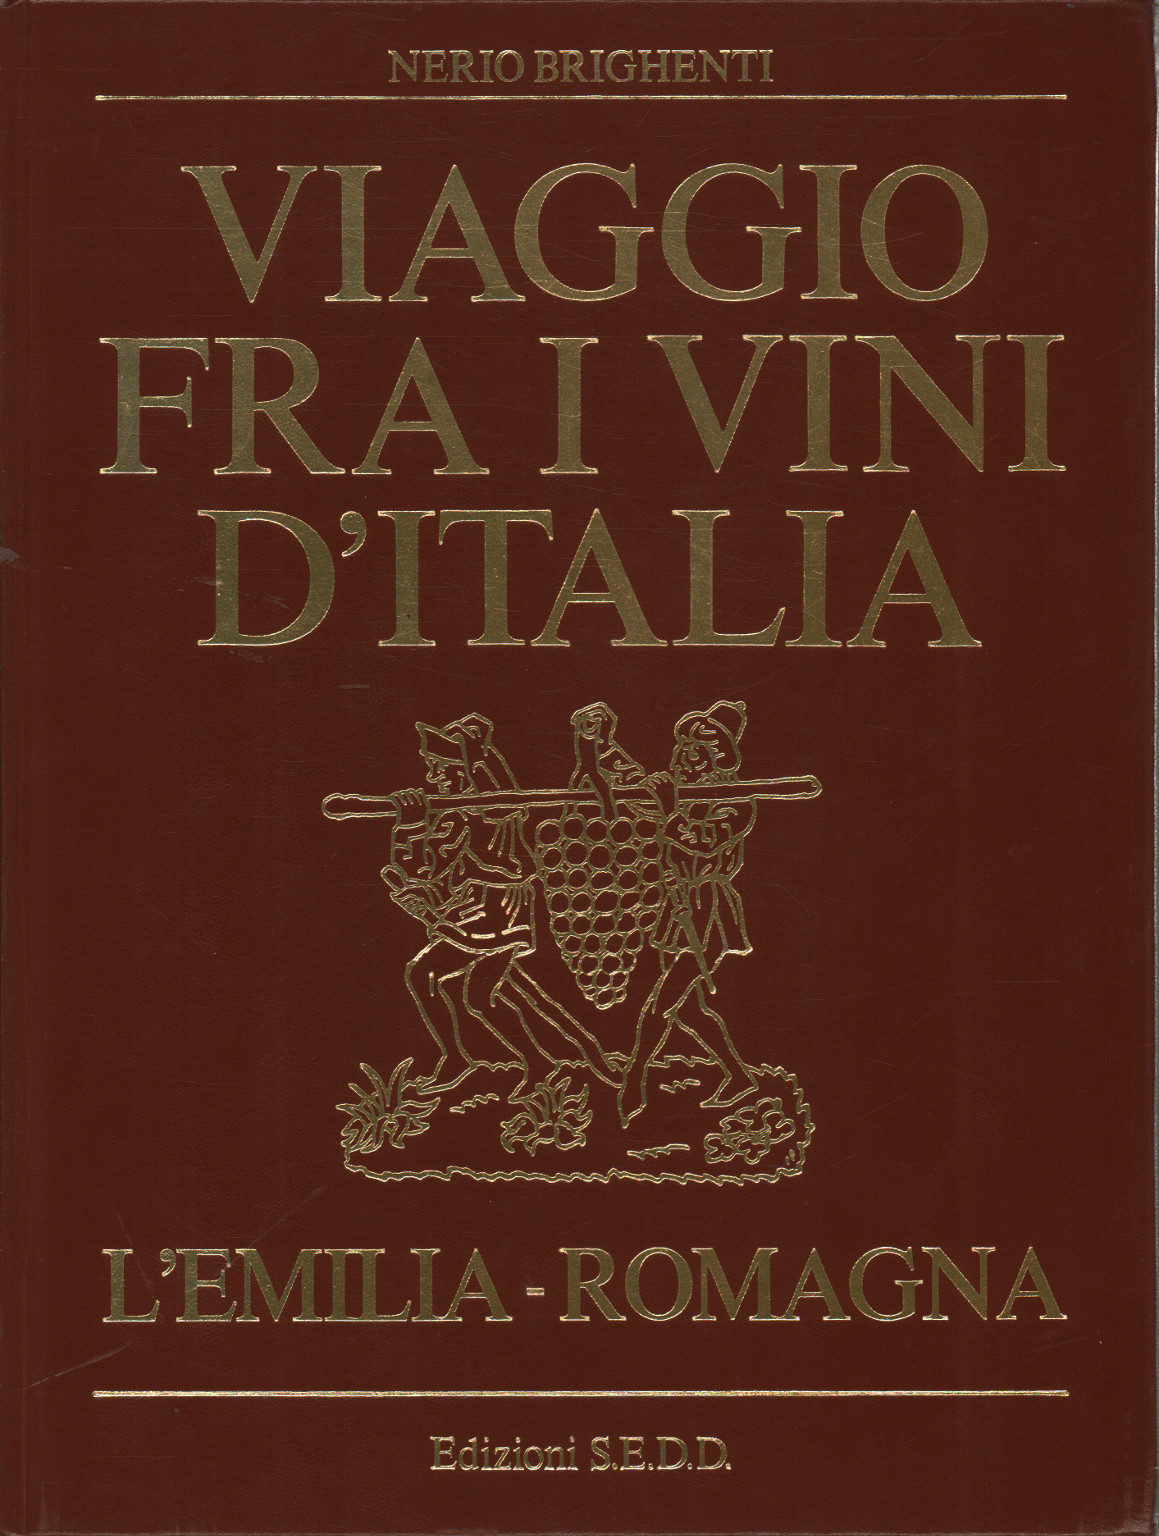 Journey through the wines of Emilia-Romagna, Nerio Brighenti